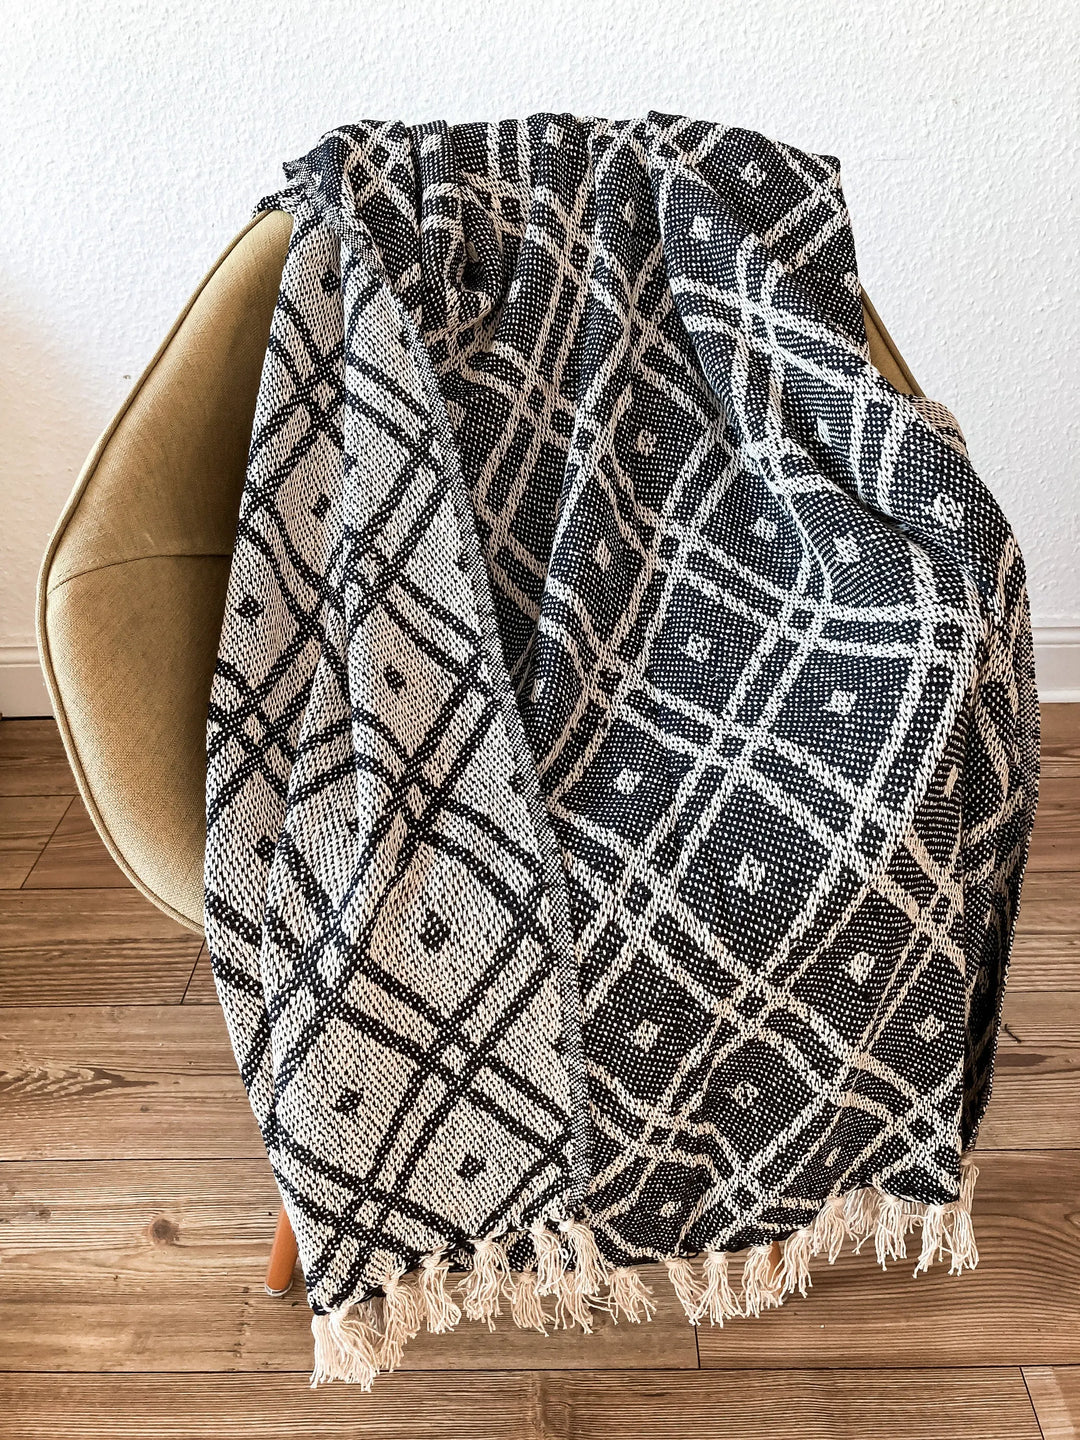 Decke aus Baumwolle Boho Style Schwarz Weiß ausgeklappt auf Stuhl